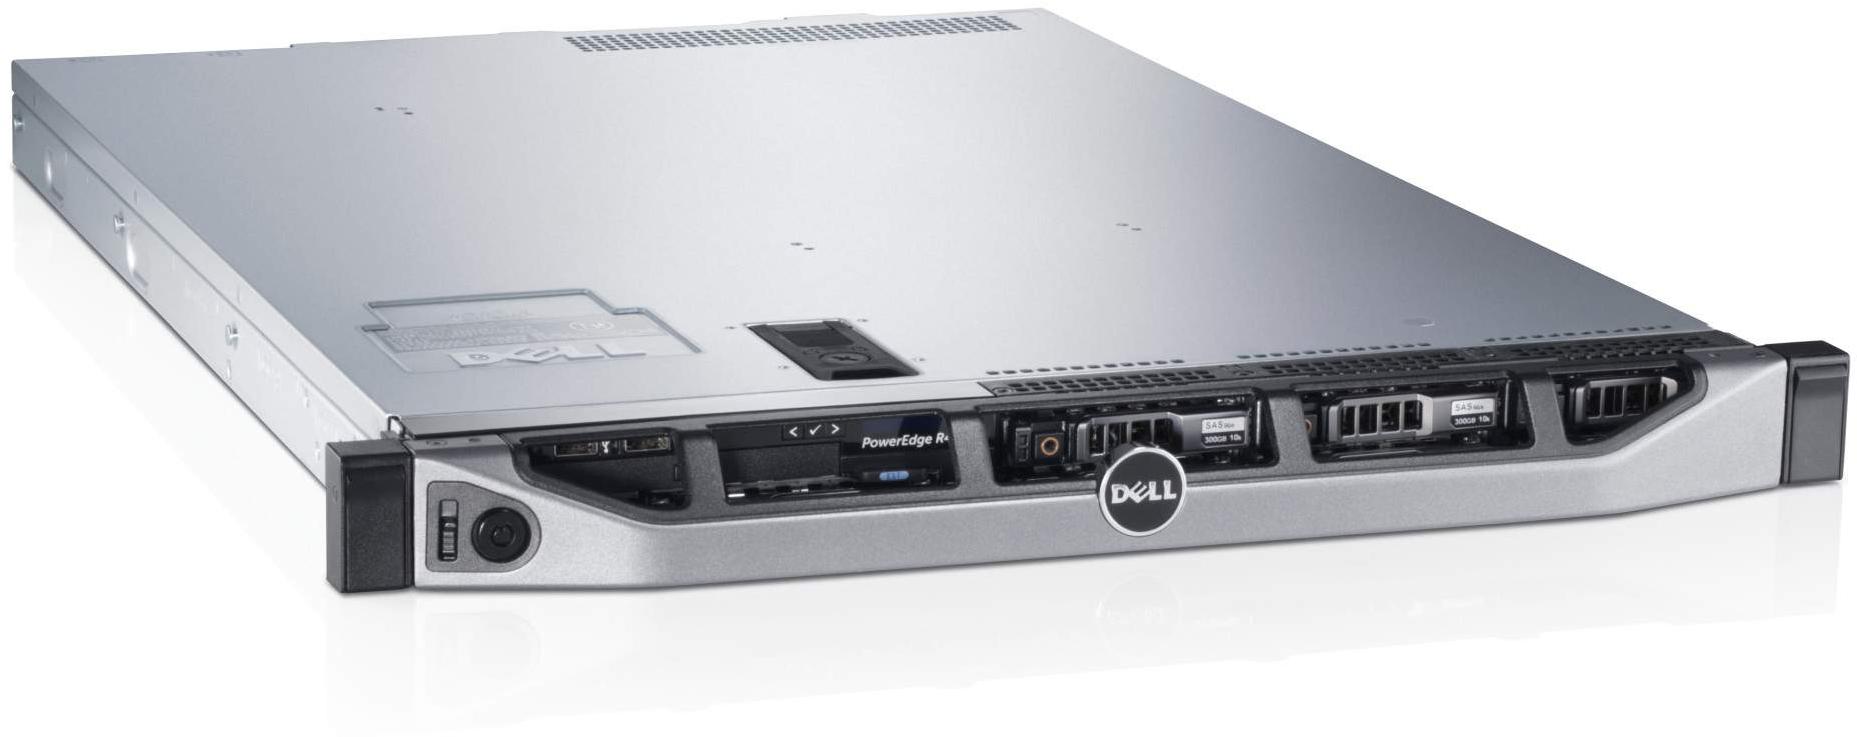     Dell PowerEdge R620 (210-39504-30)  2